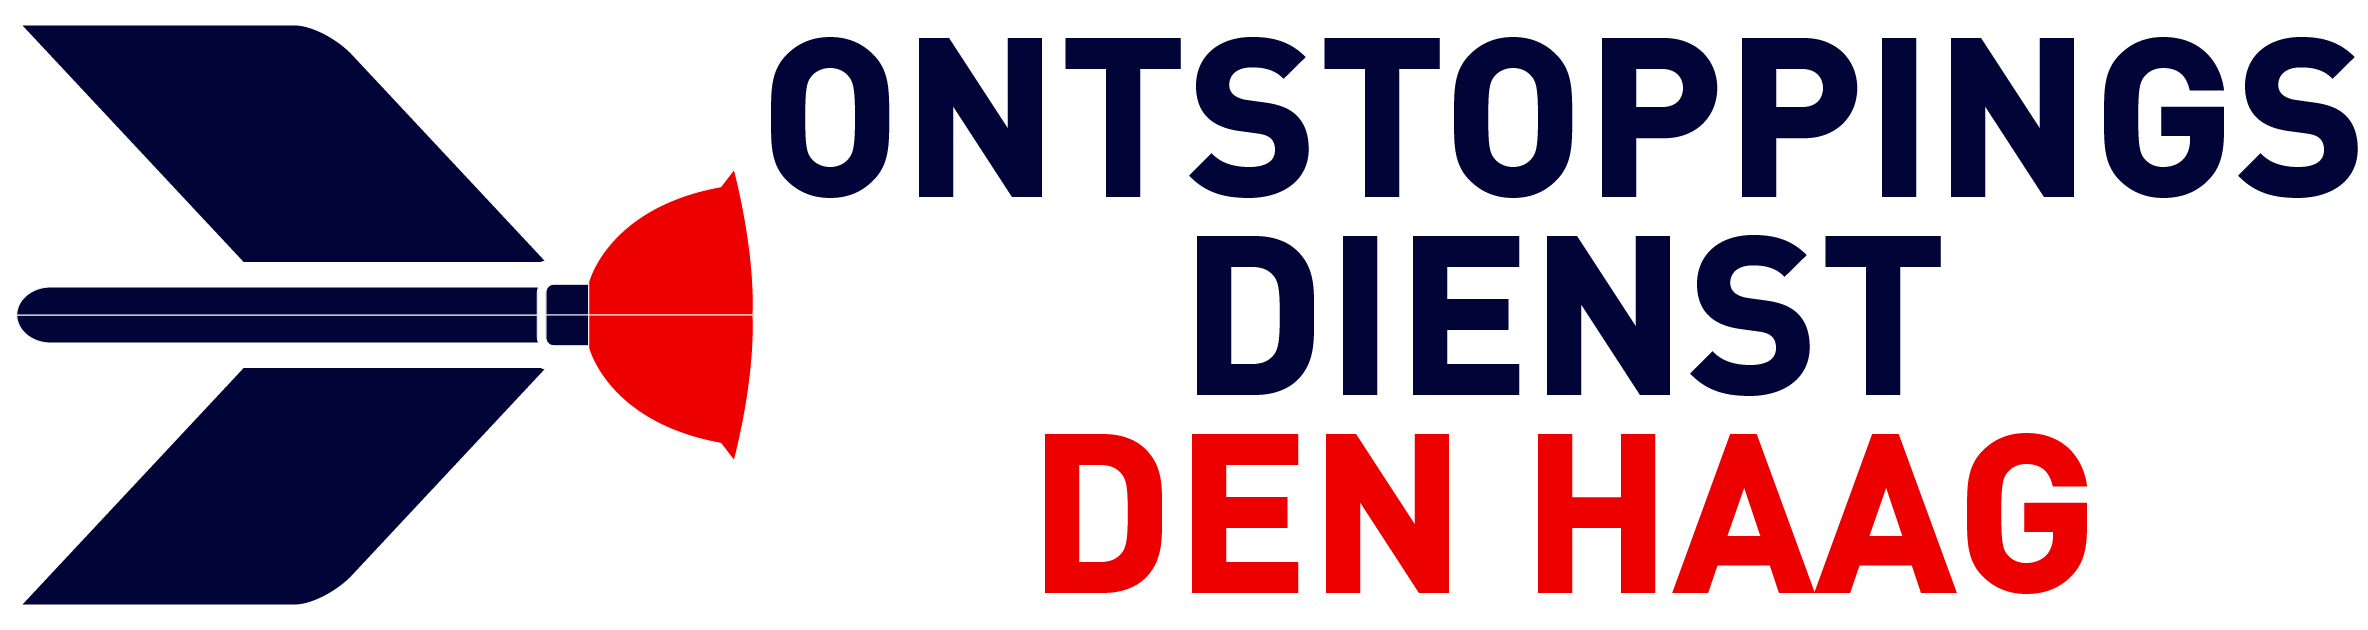 Ontstoppingsdienst Den Haag logo